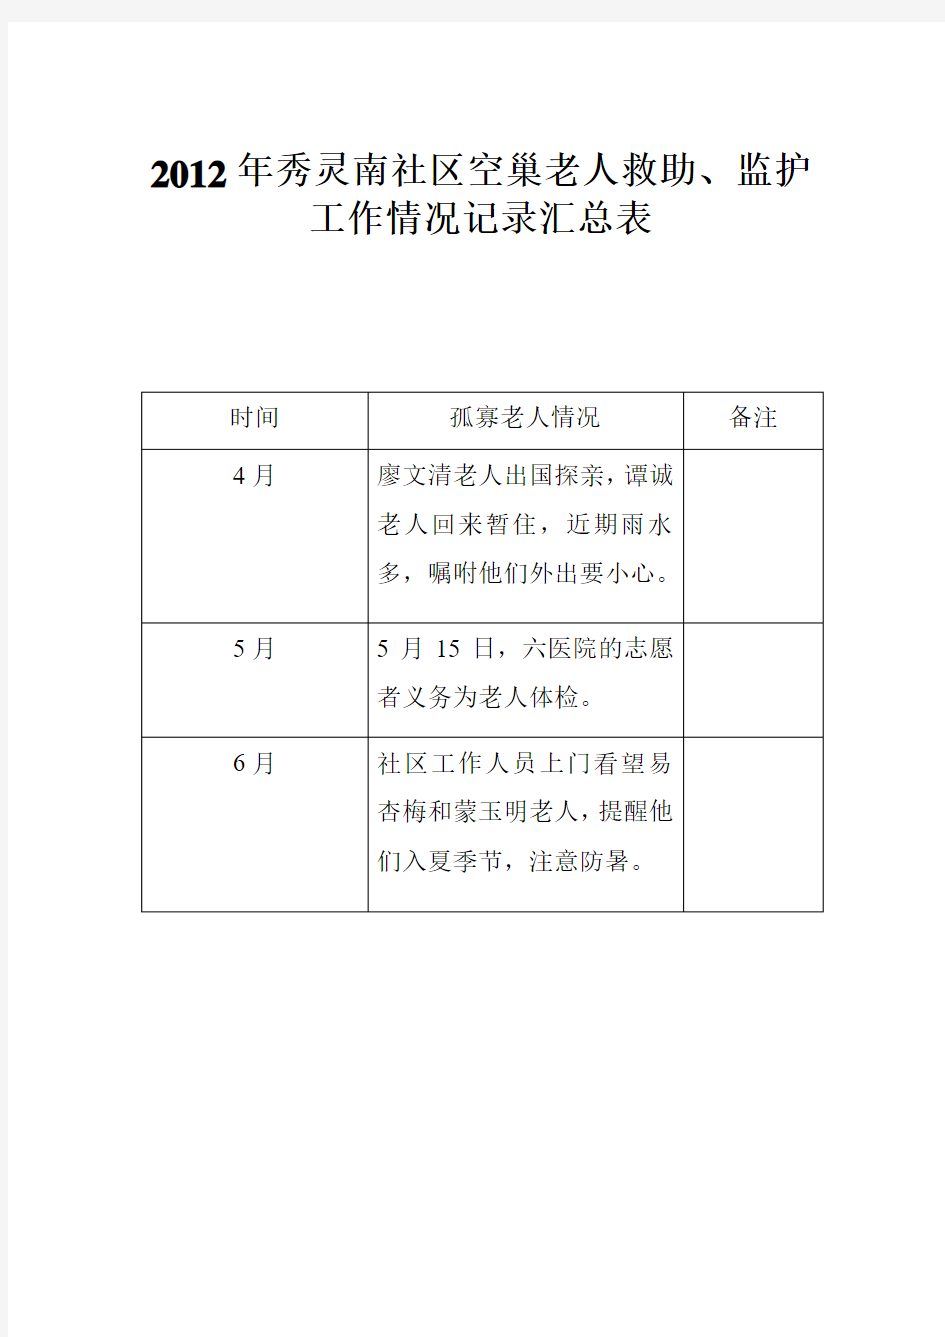 2012年秀灵南社区空巢老人救助、监护工作情况记录汇总表